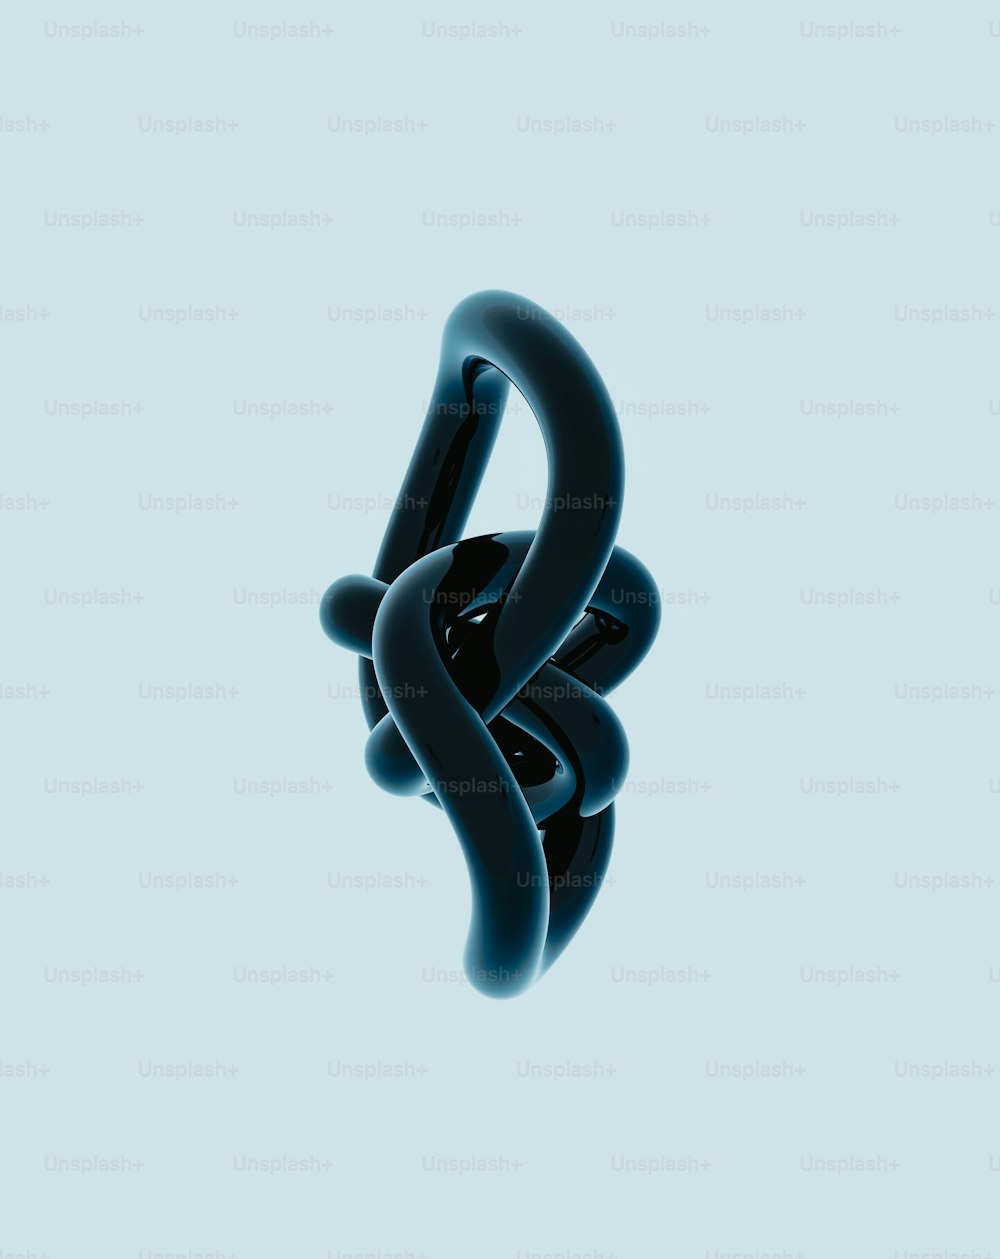 Un objeto negro flotando en el aire sobre un fondo azul